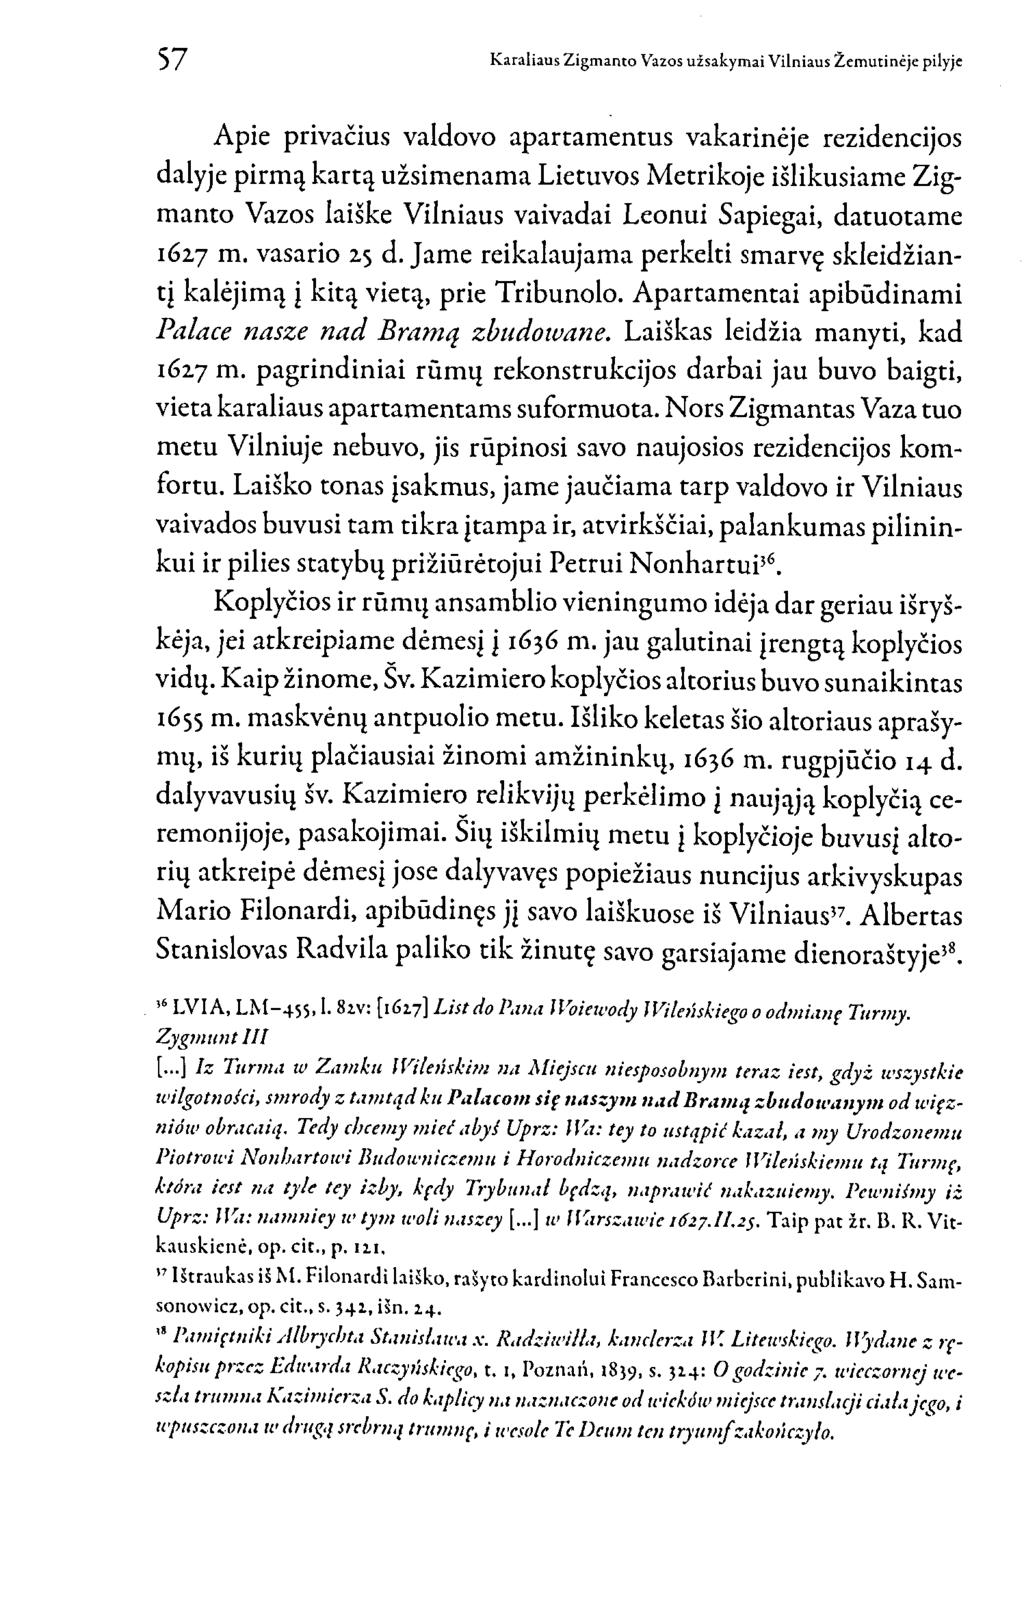 Apie privačius valdovo apartamentus vakarinėje rezidencijos dalyje pirmą kartą užsimenama Lietuvos Metrikoje išlikusiame Zigmanto Vazos laiške Vilniaus vaivadai Leonui Sapiegai, datuotame 1627 m.